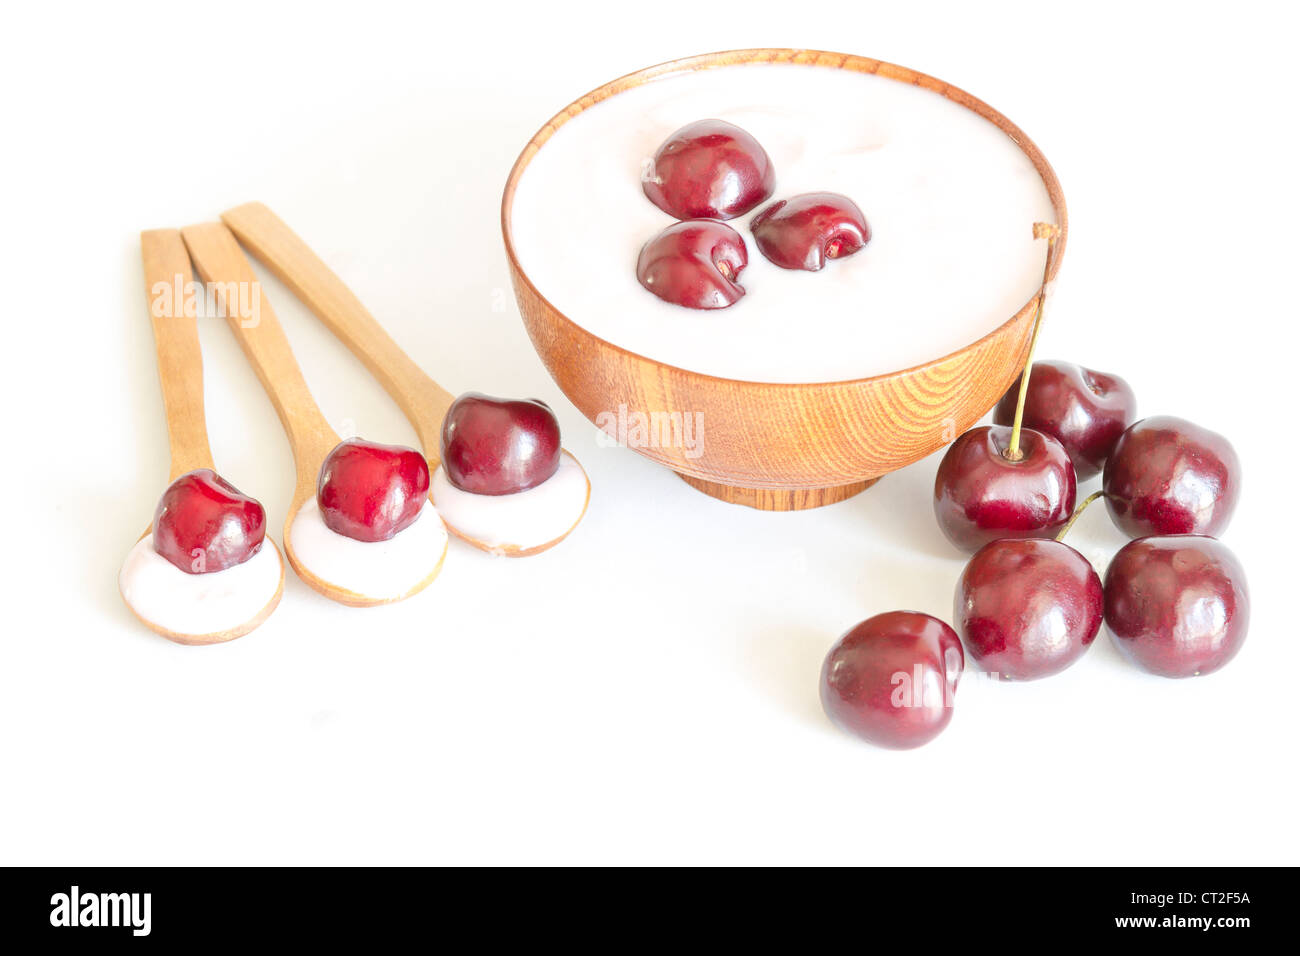 Vue de dessus d'un bol de cerises yaourt, cuillère en bois avec les cerises et le yogourt. Banque D'Images